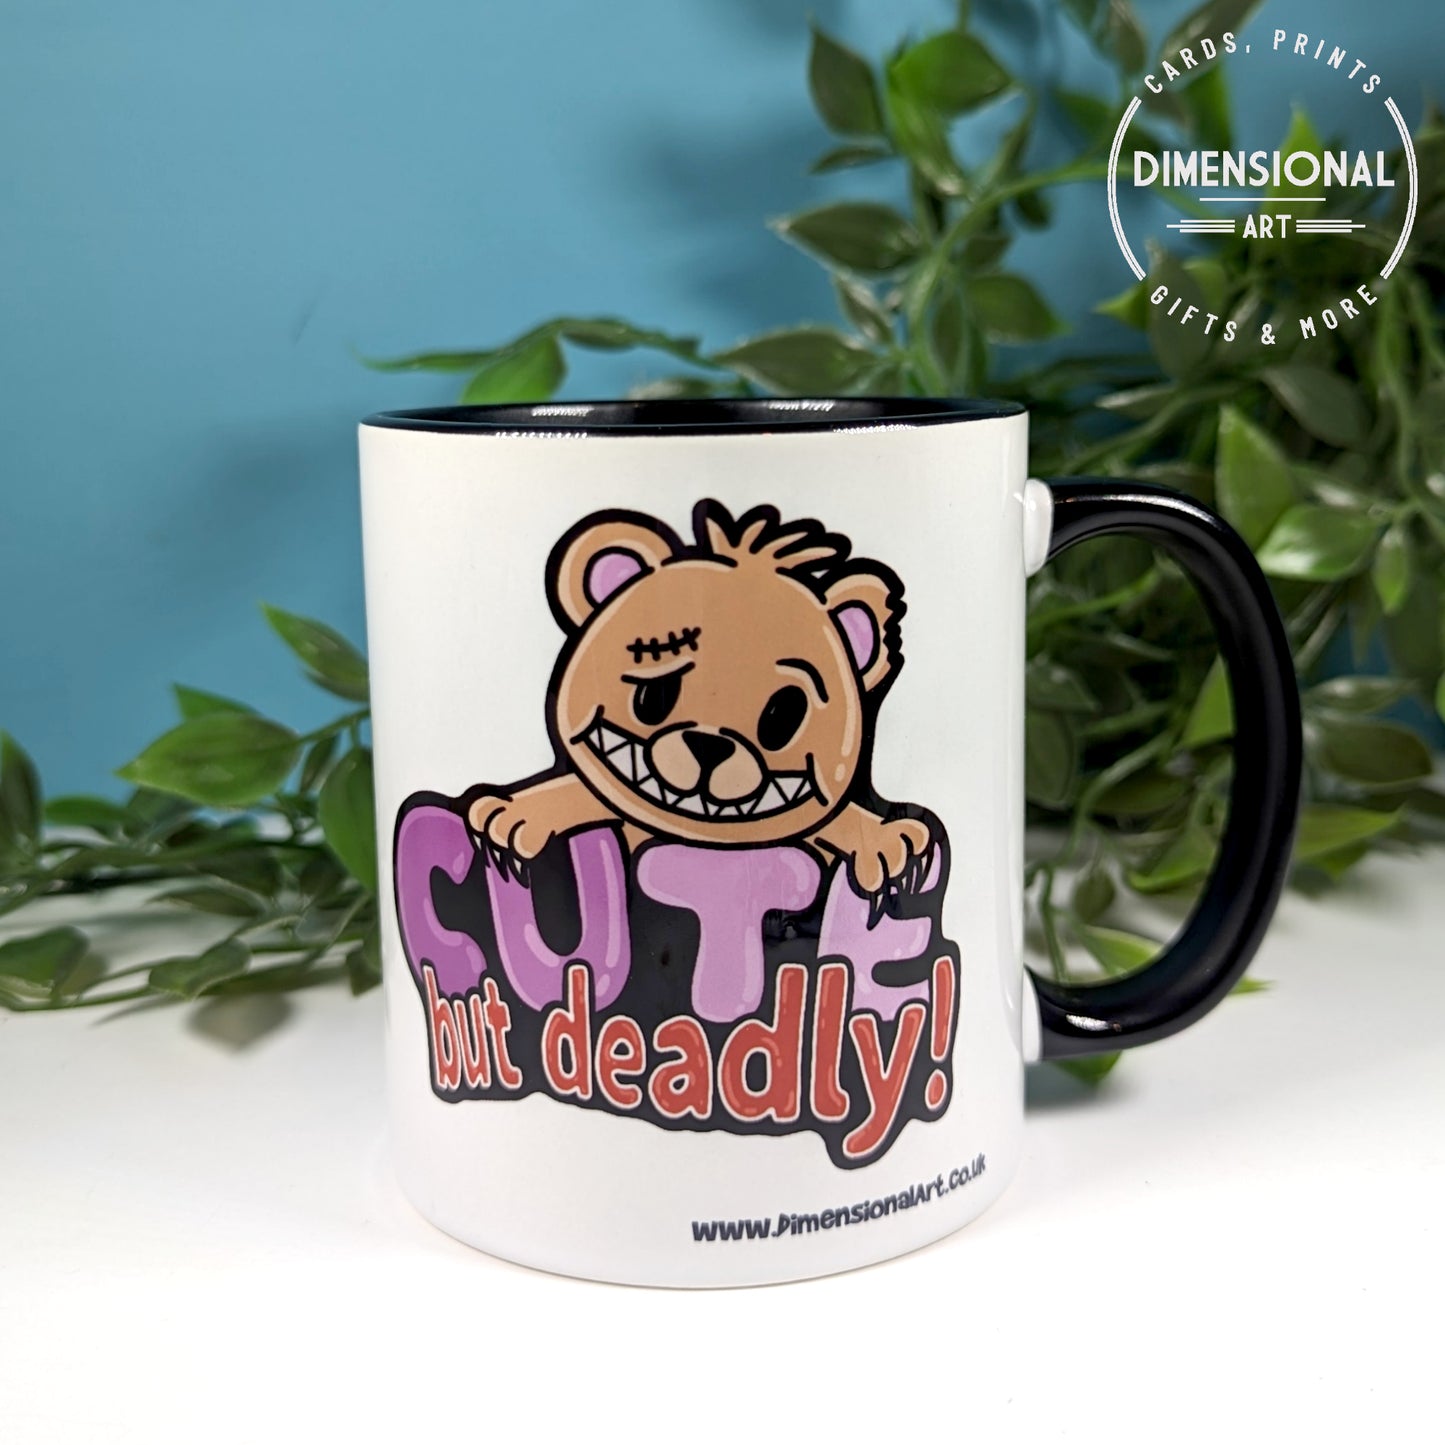 Cute but deadly bear Mug